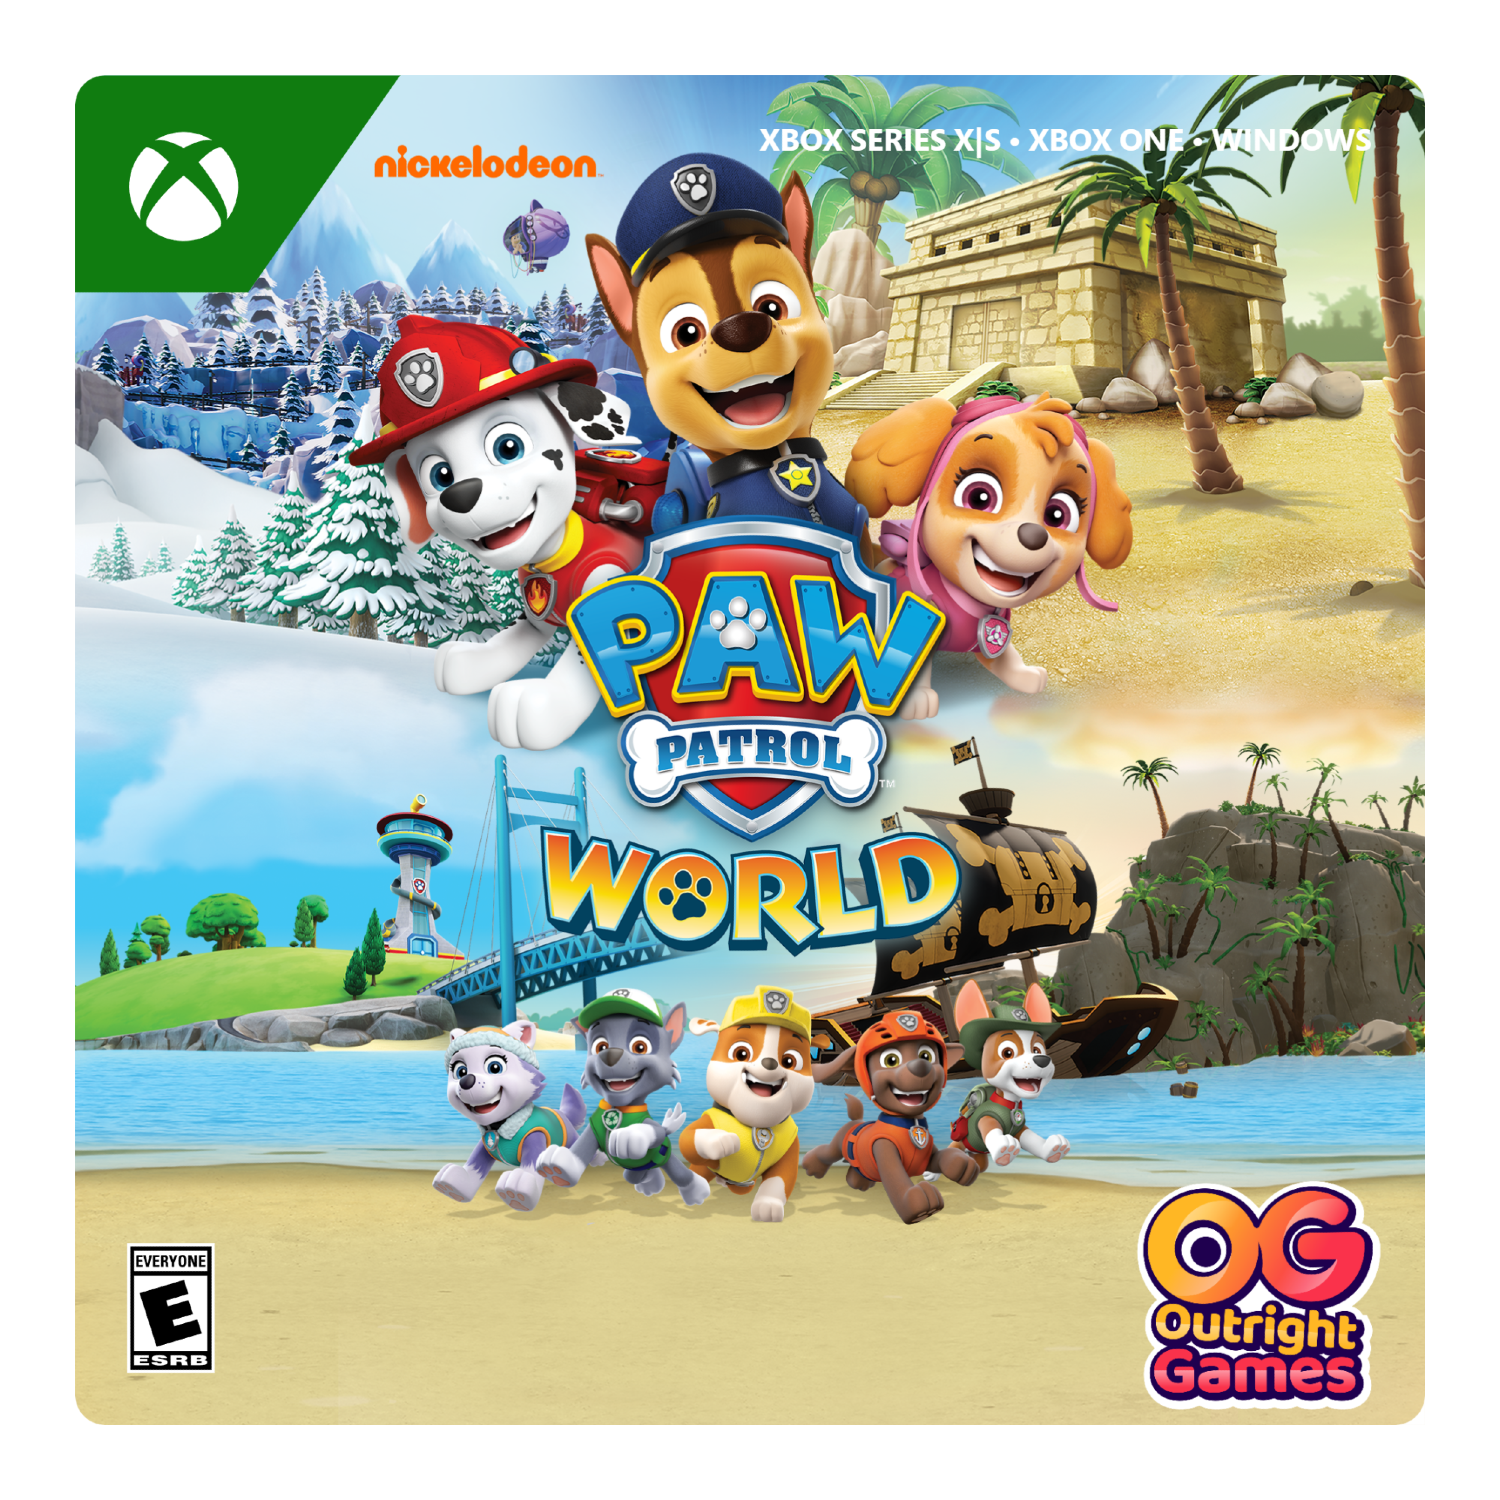 World - Series X|S, Xbox Paw Windows Xbox One, Patrol [Digital]